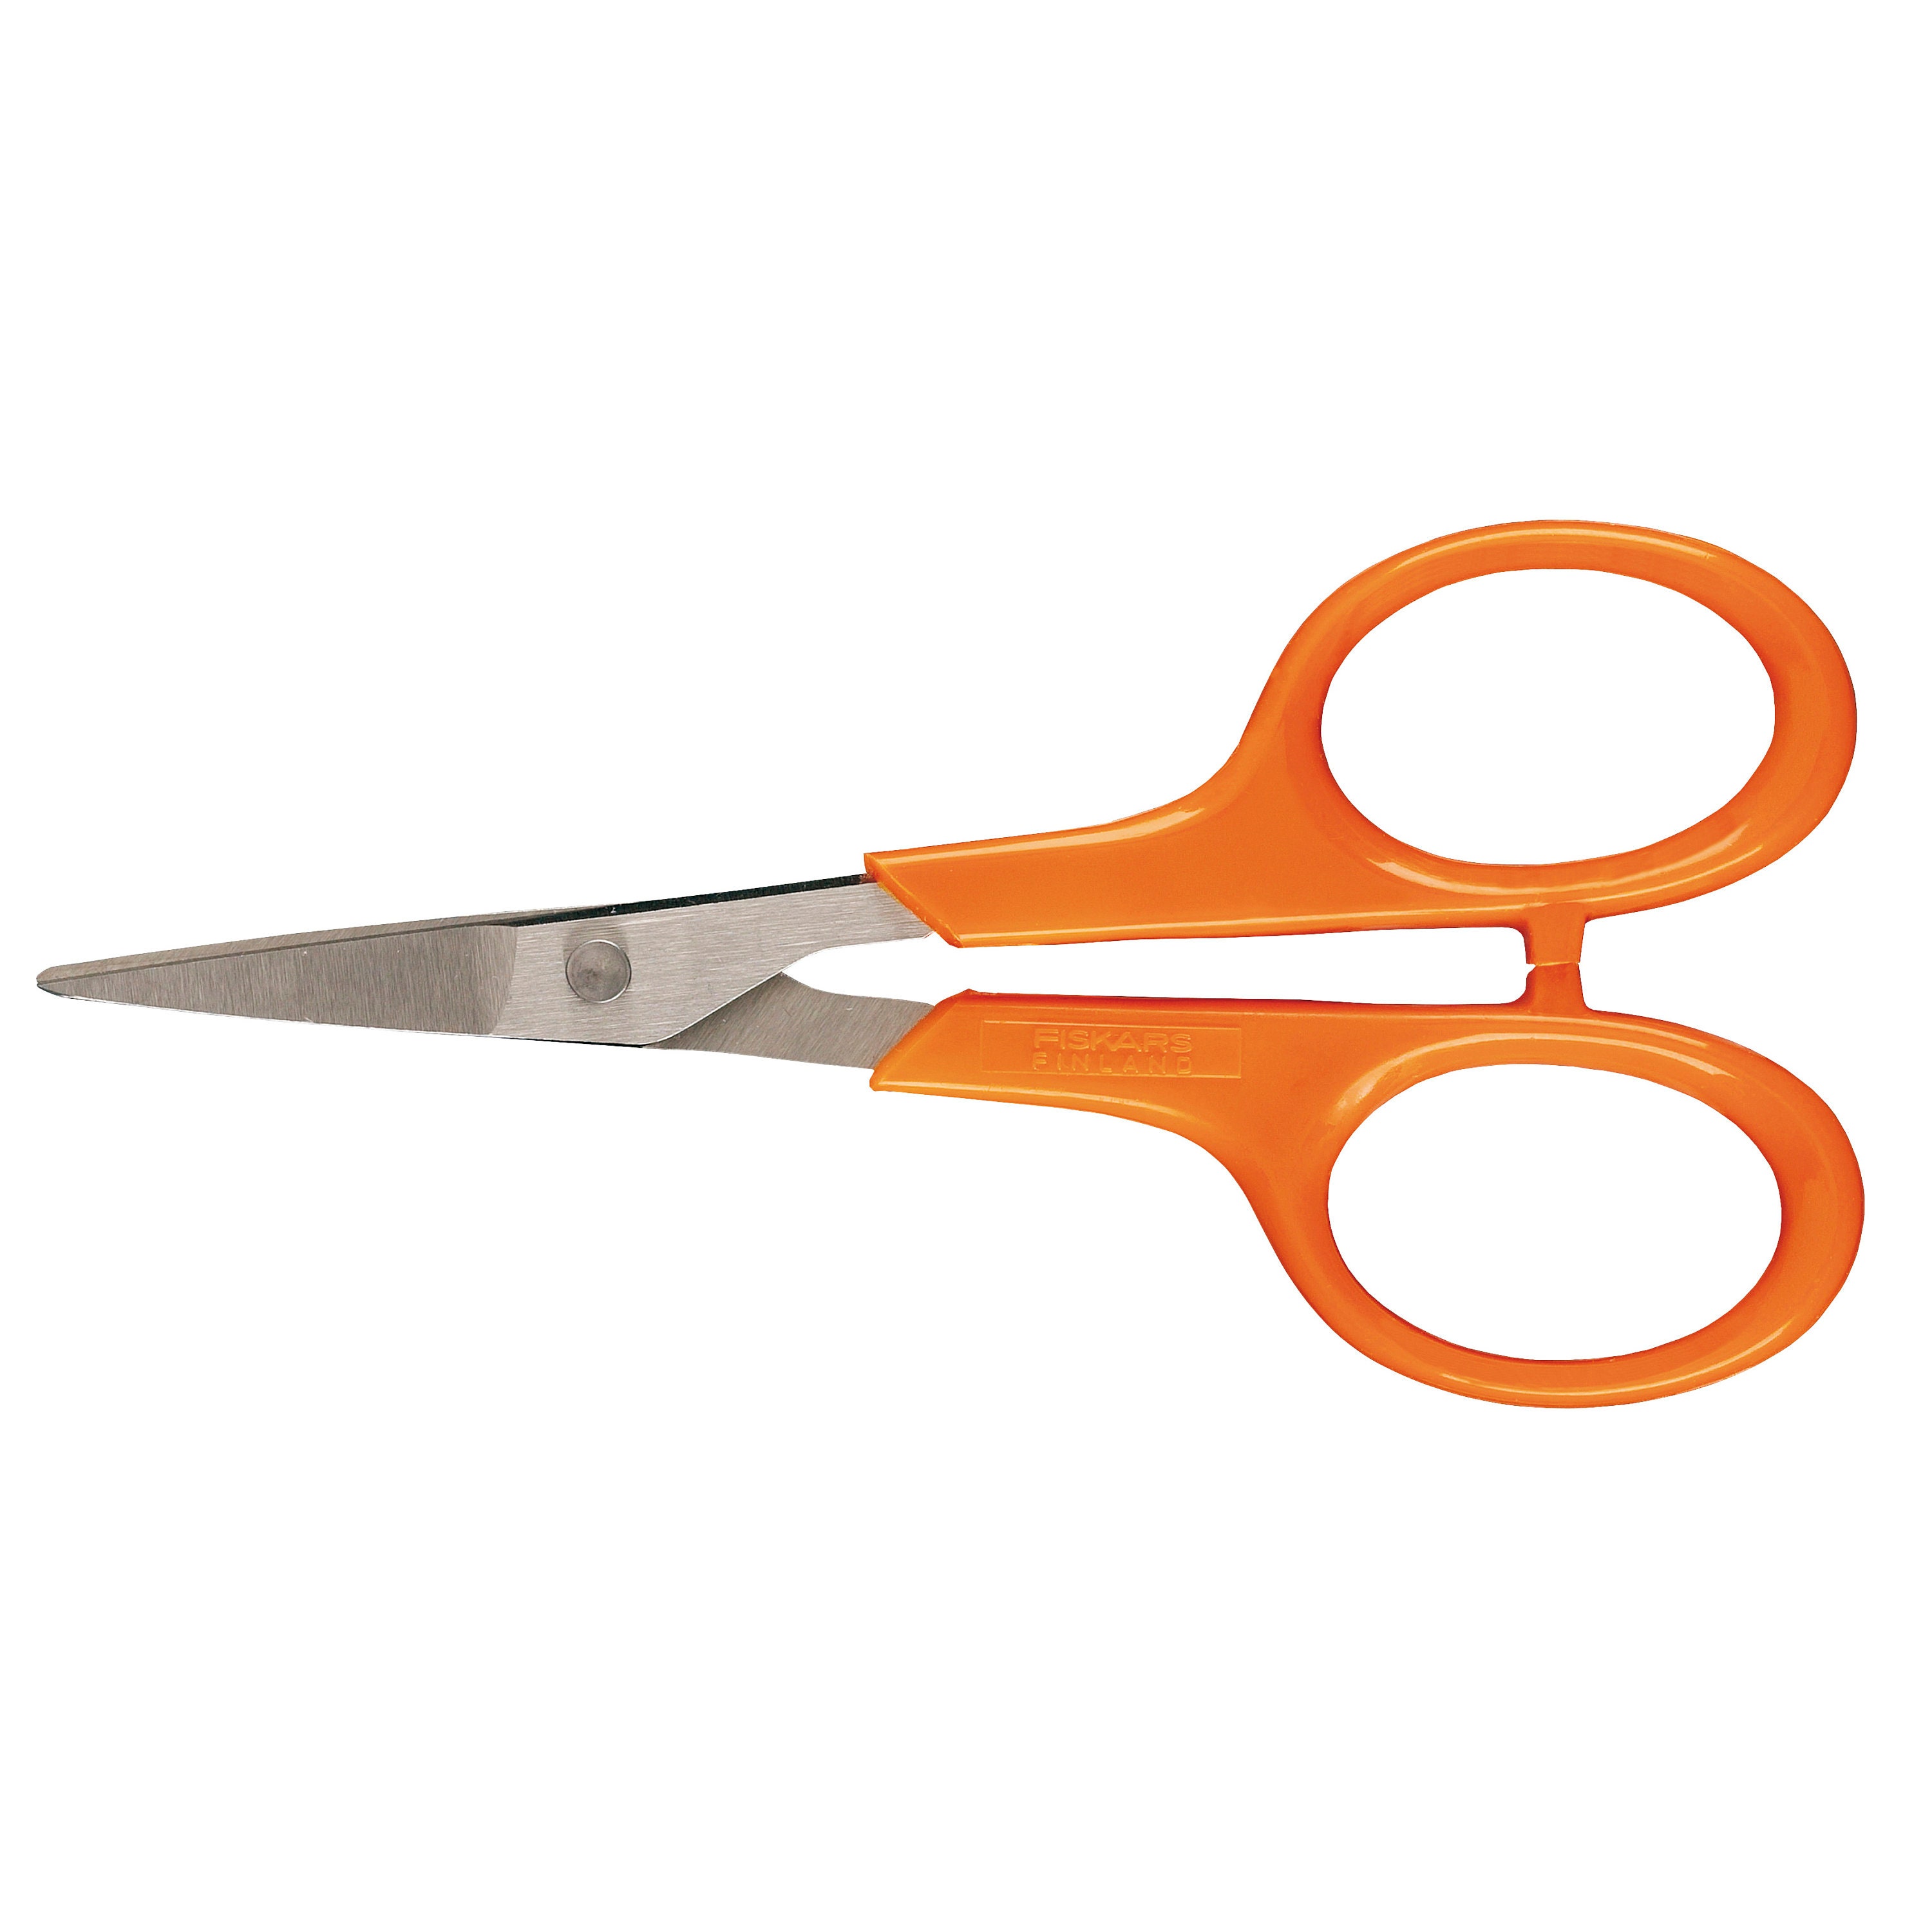 Tailor Scissors/Shears 24.5 cm